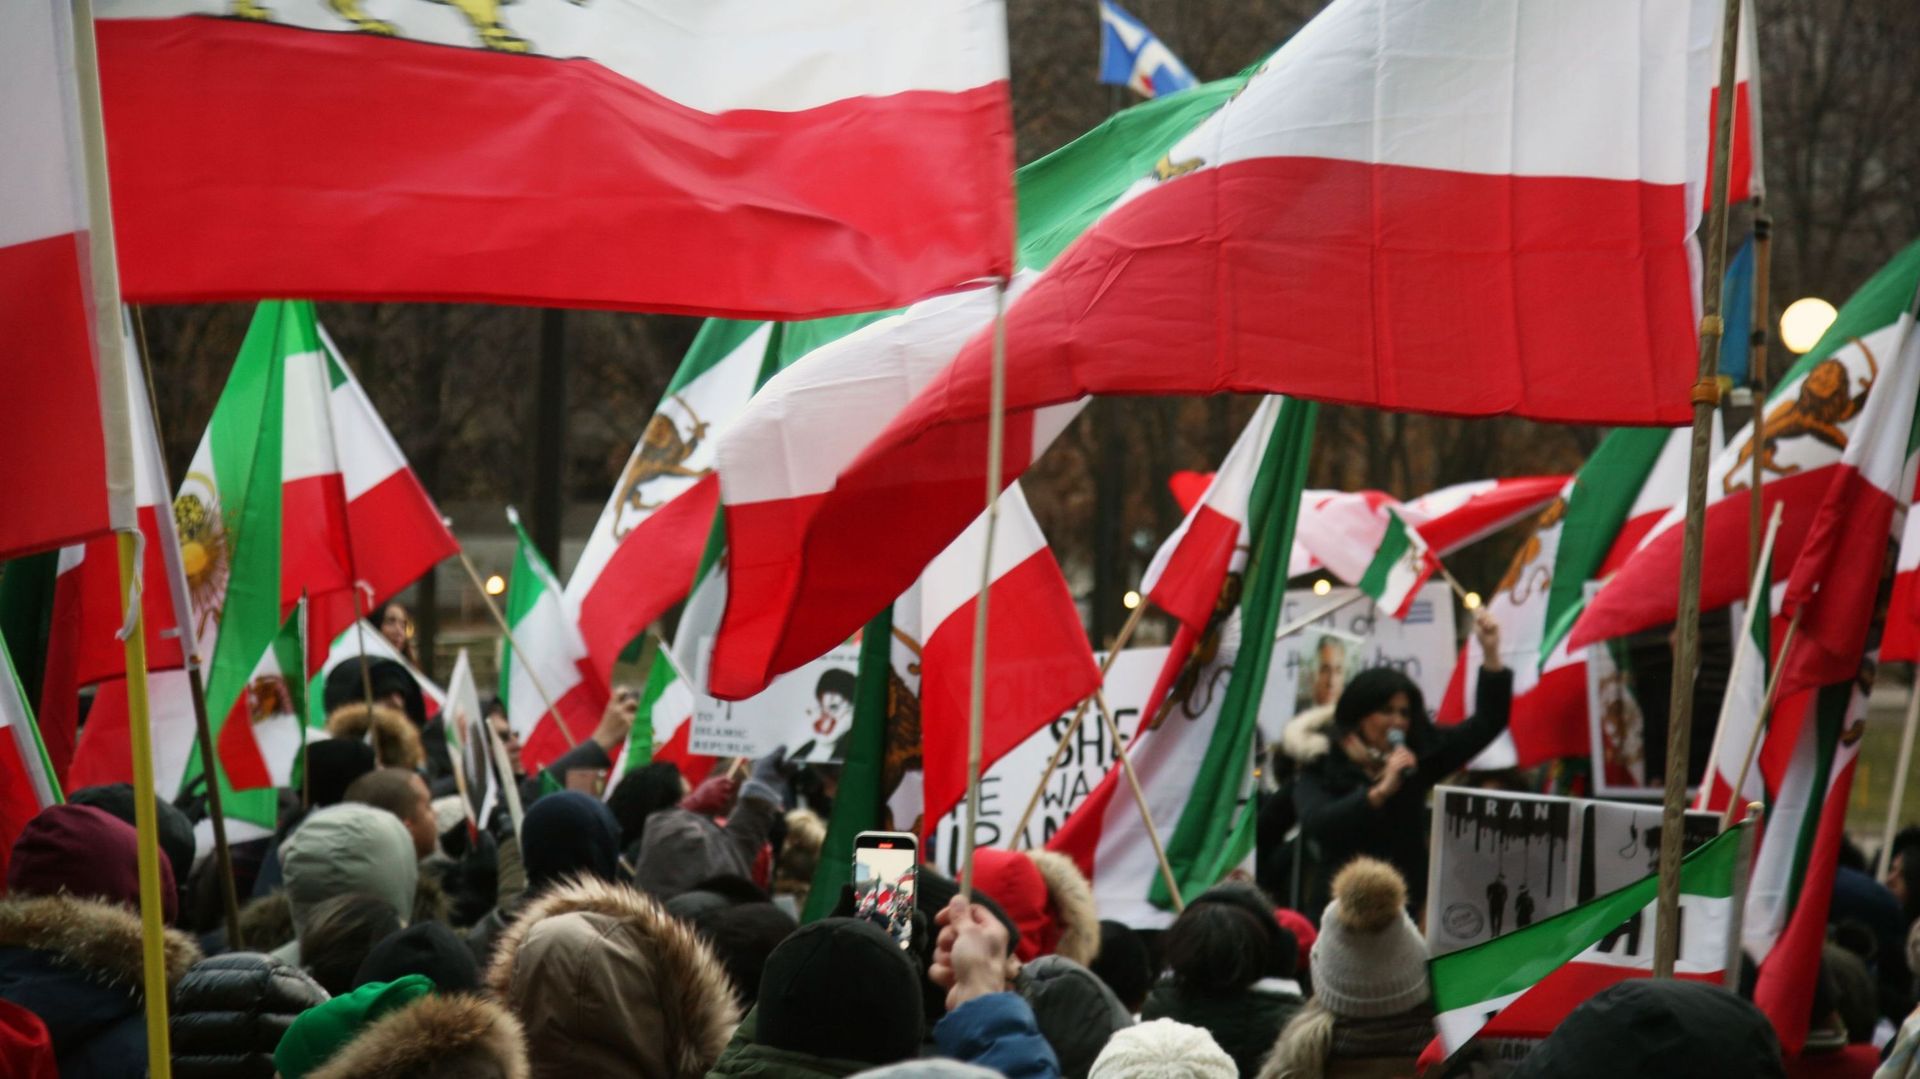 Les protestations contre le régime islamique iranien se multiplient dans le monde entier depuis la mort de Mahsa Amini, ici au Canada